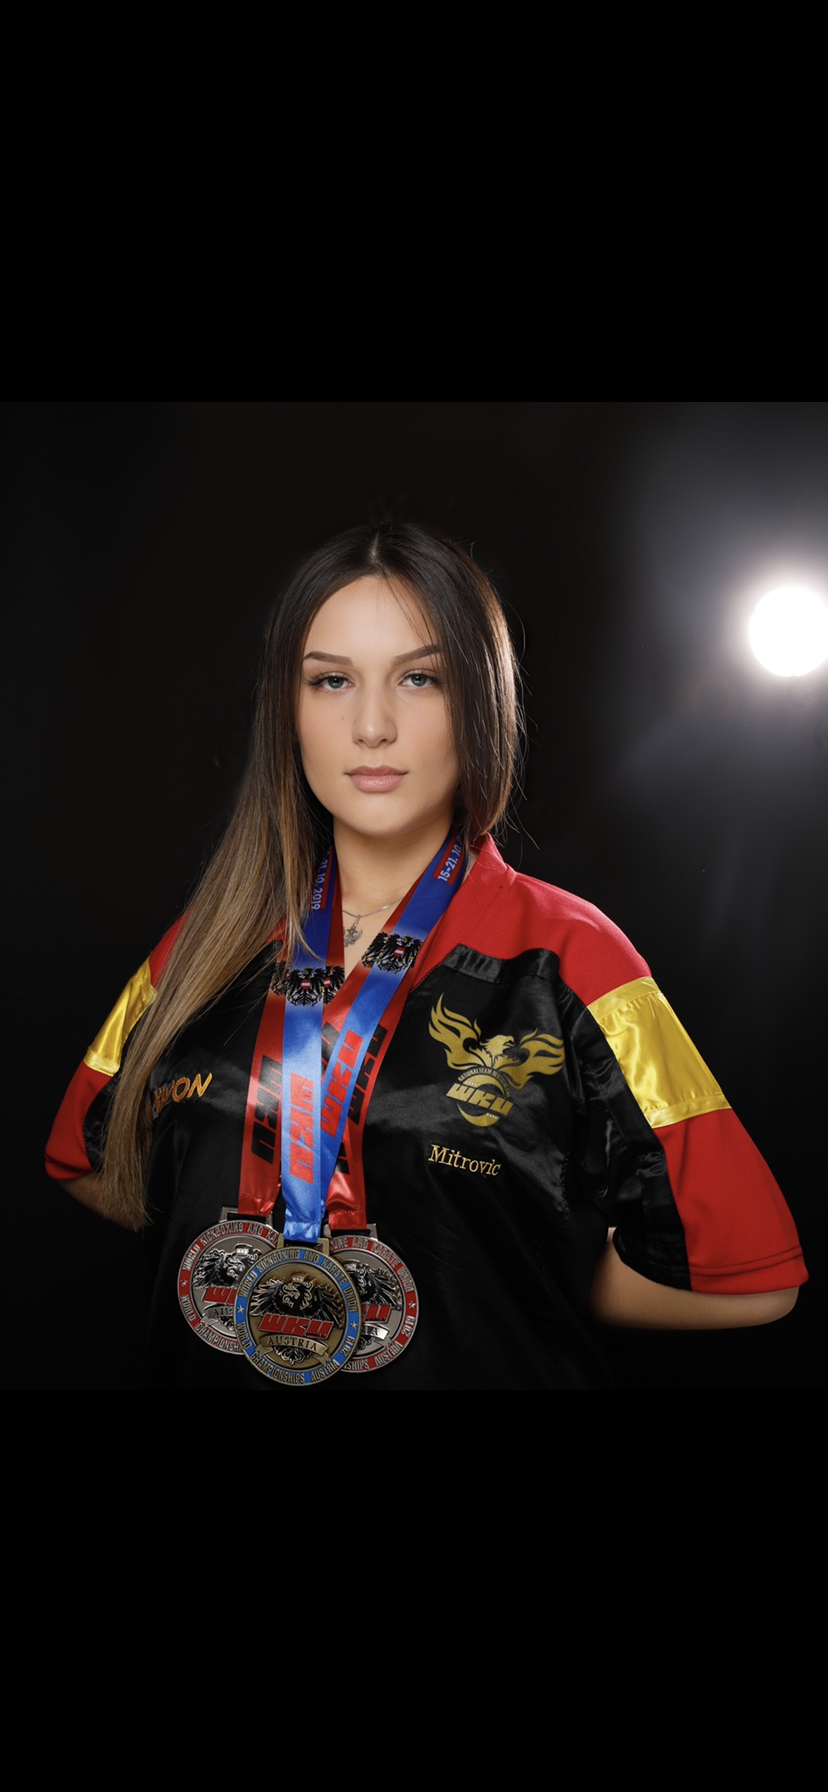 <p>Erfolgreiche Kickboxerin: Laura Adriana Mitrovic mit ihrer Medaillensammlung. (Bild: Laura Adriana Mitrovic)</p>